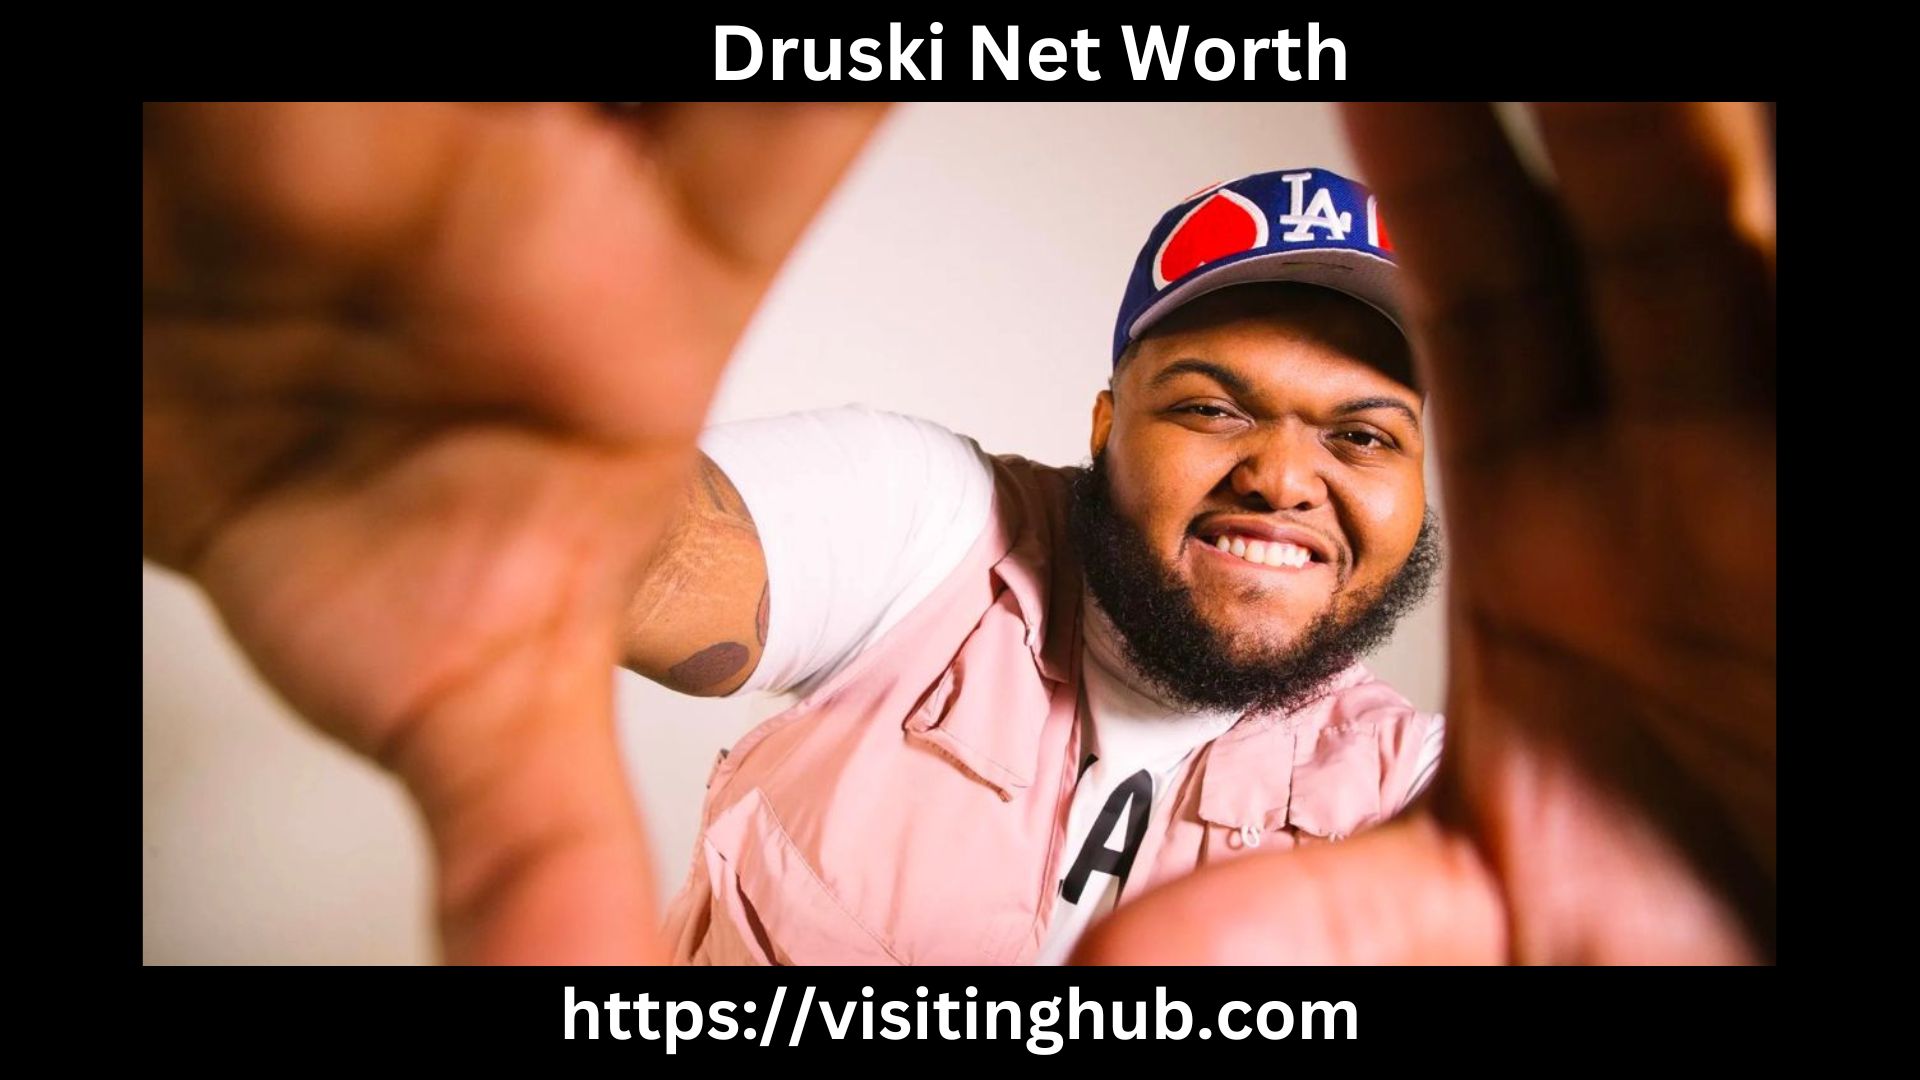 Druski Net Worth